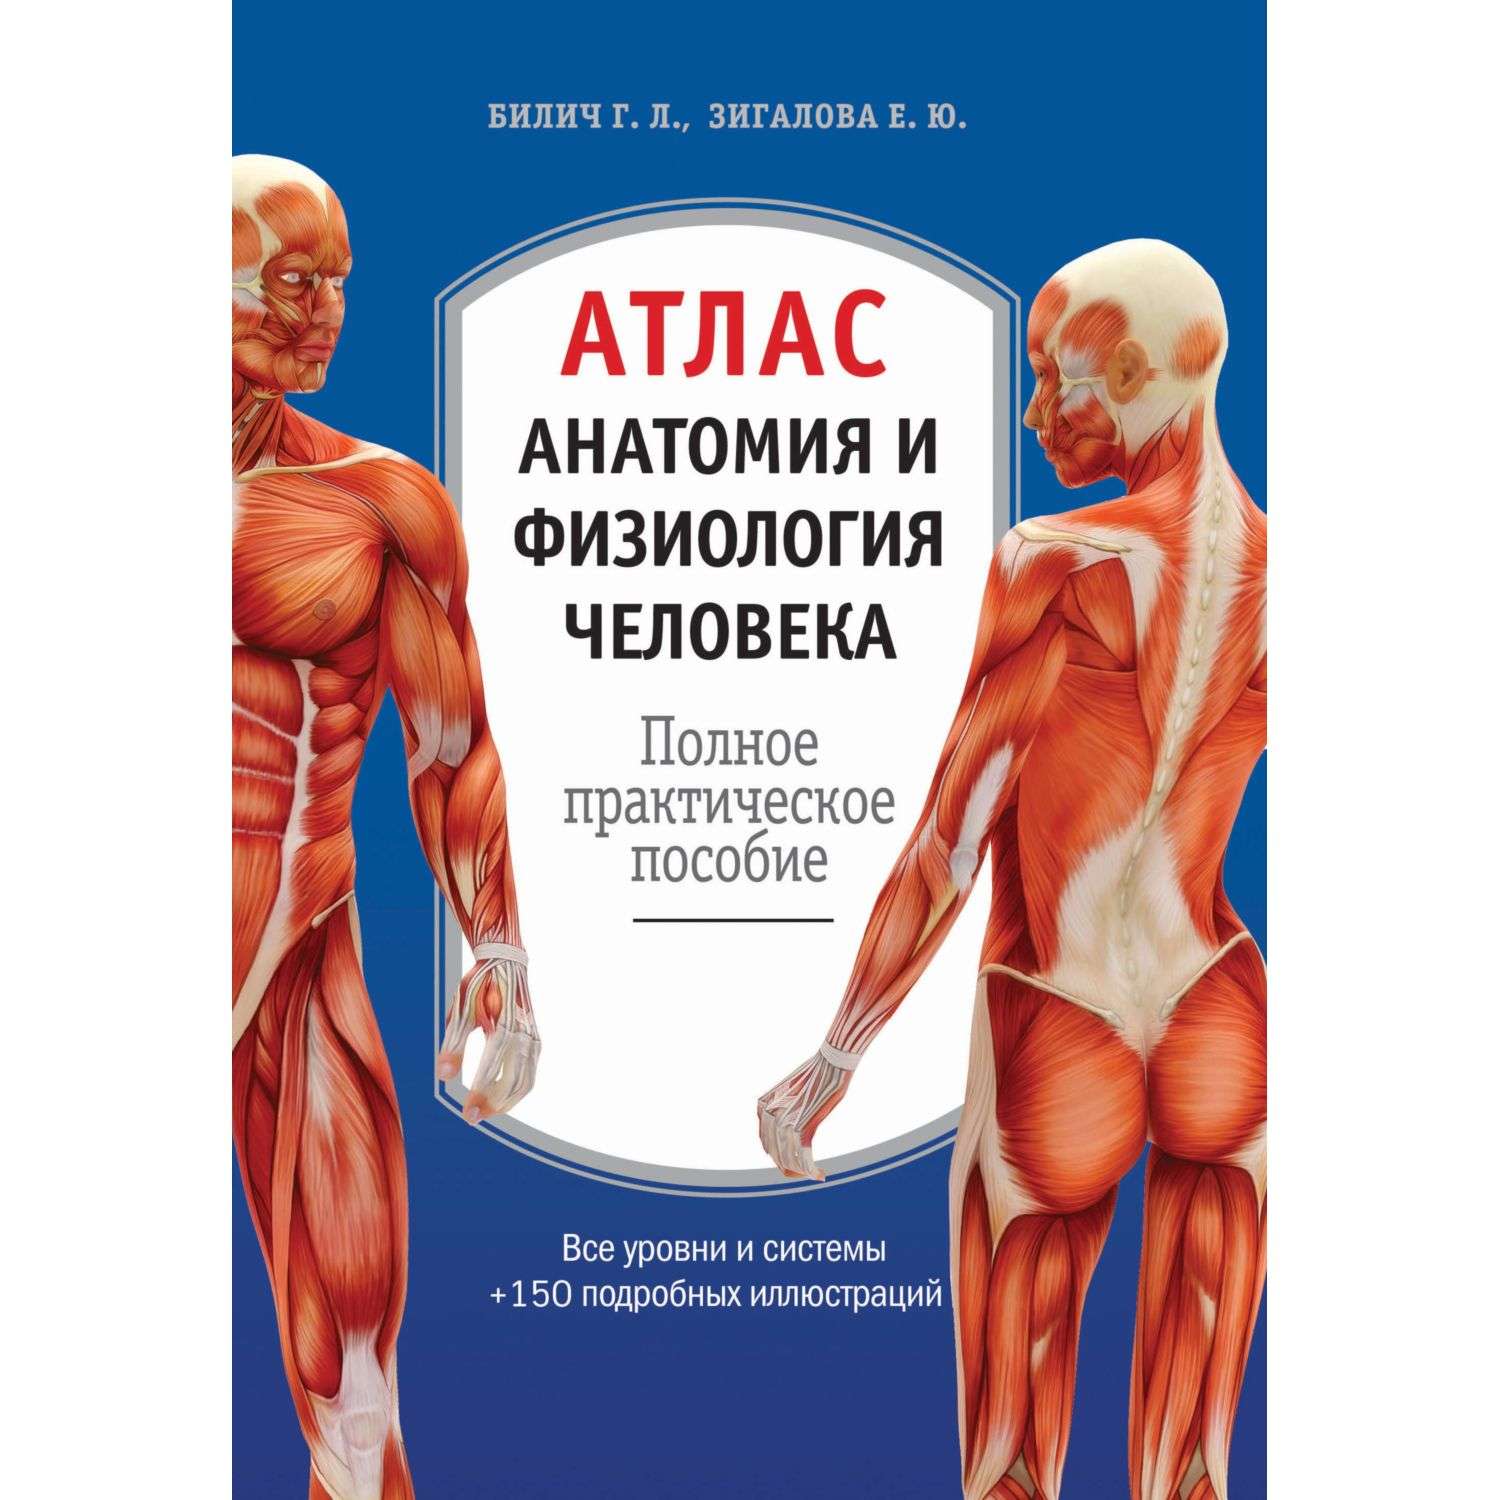 Книга Эксмо Атлас Анатомия и физиология человека полное практическое пособие 2-е издание дополненное - фото 1